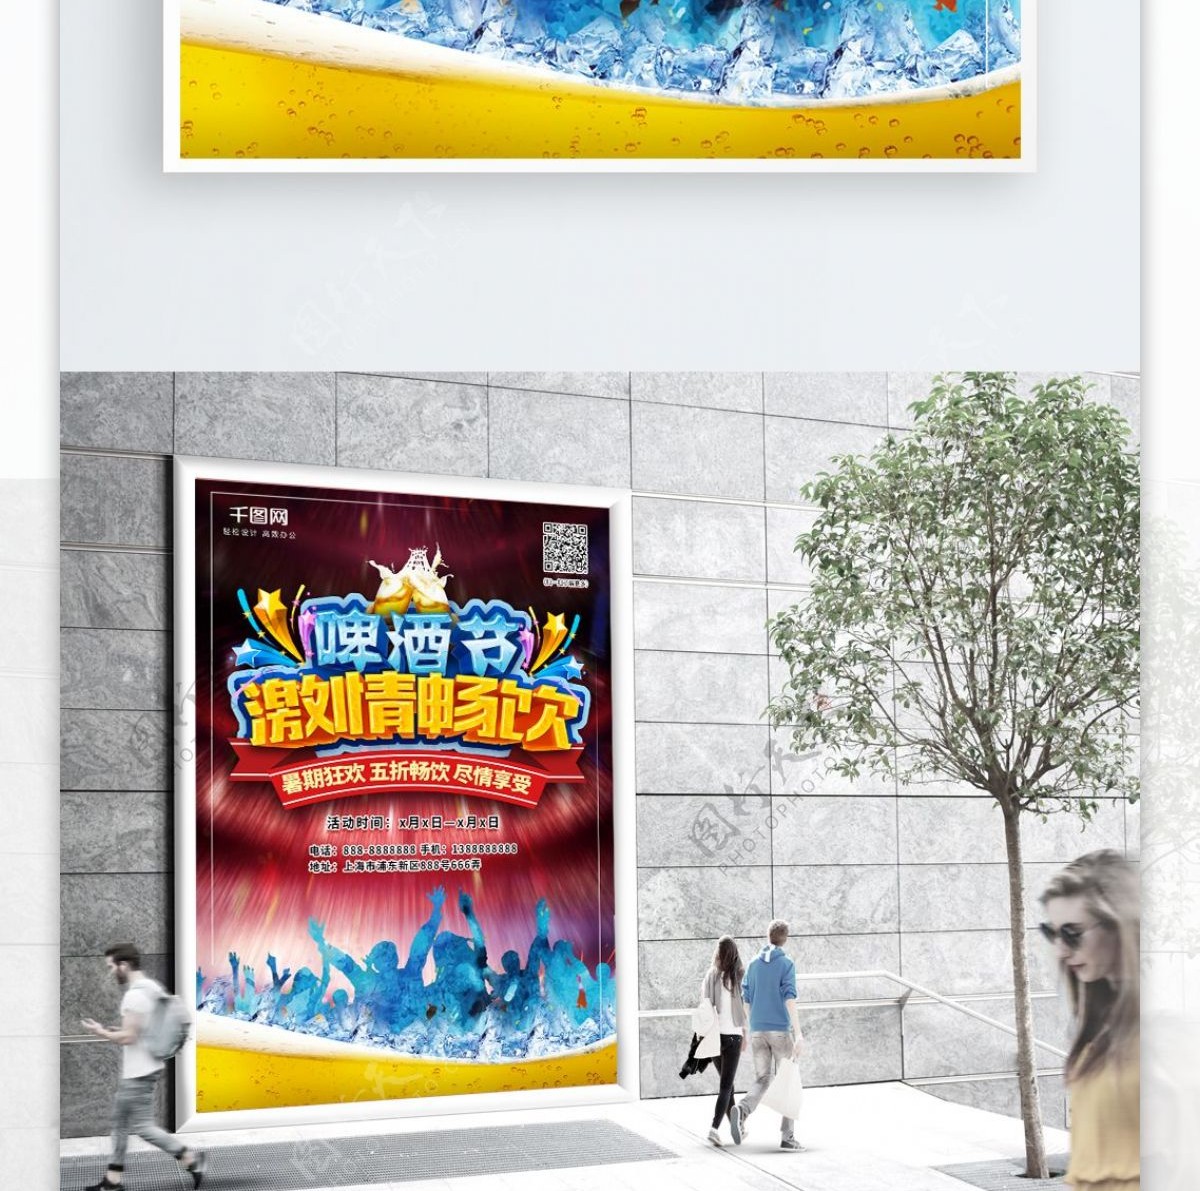 平面啤酒狂欢节暑期狂欢激情夏日炫酷海报